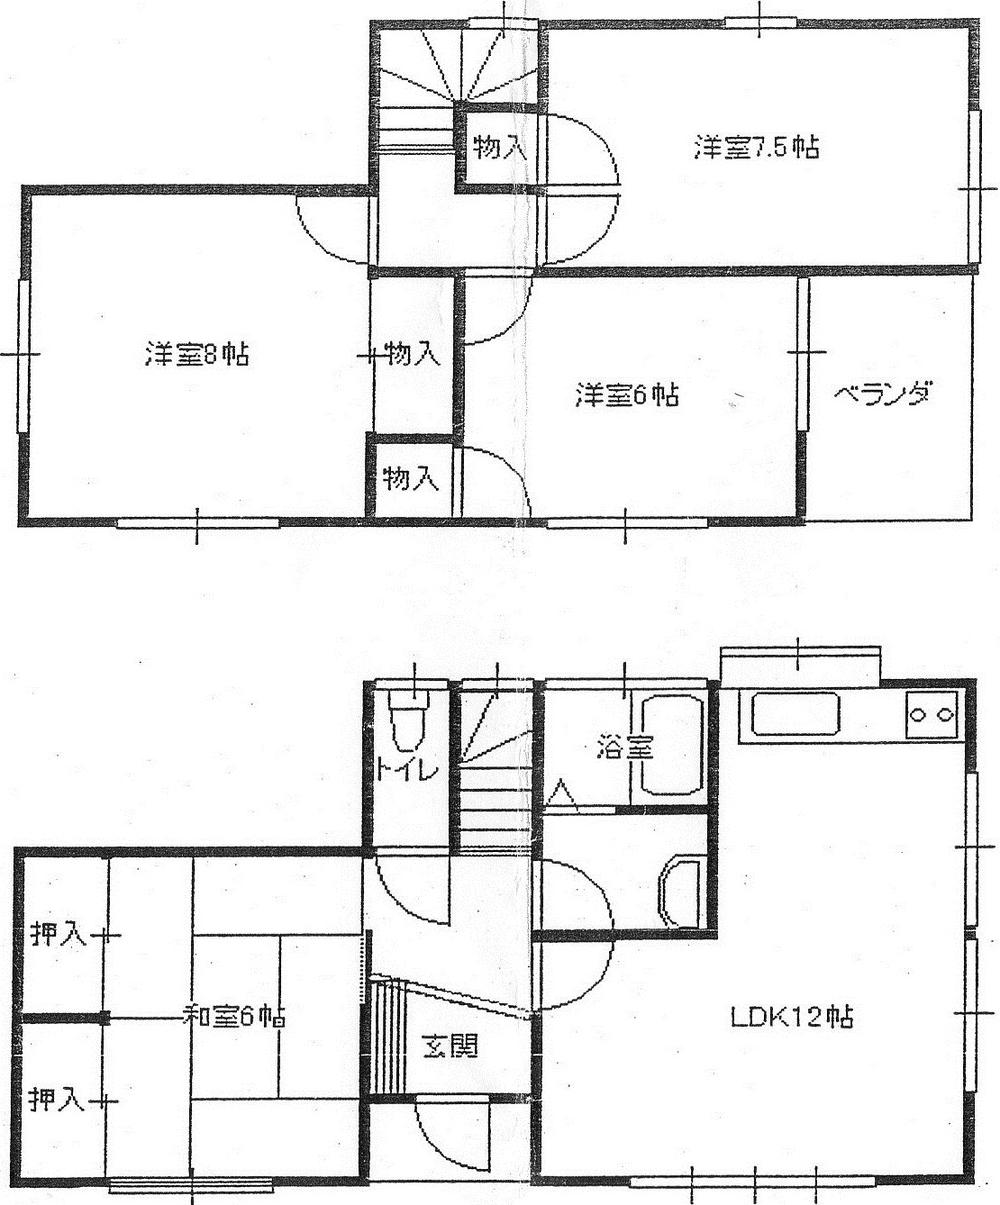 Floor plan. 6 million yen, 4LDK, Land area 219.07 sq m , Building area 108 sq m